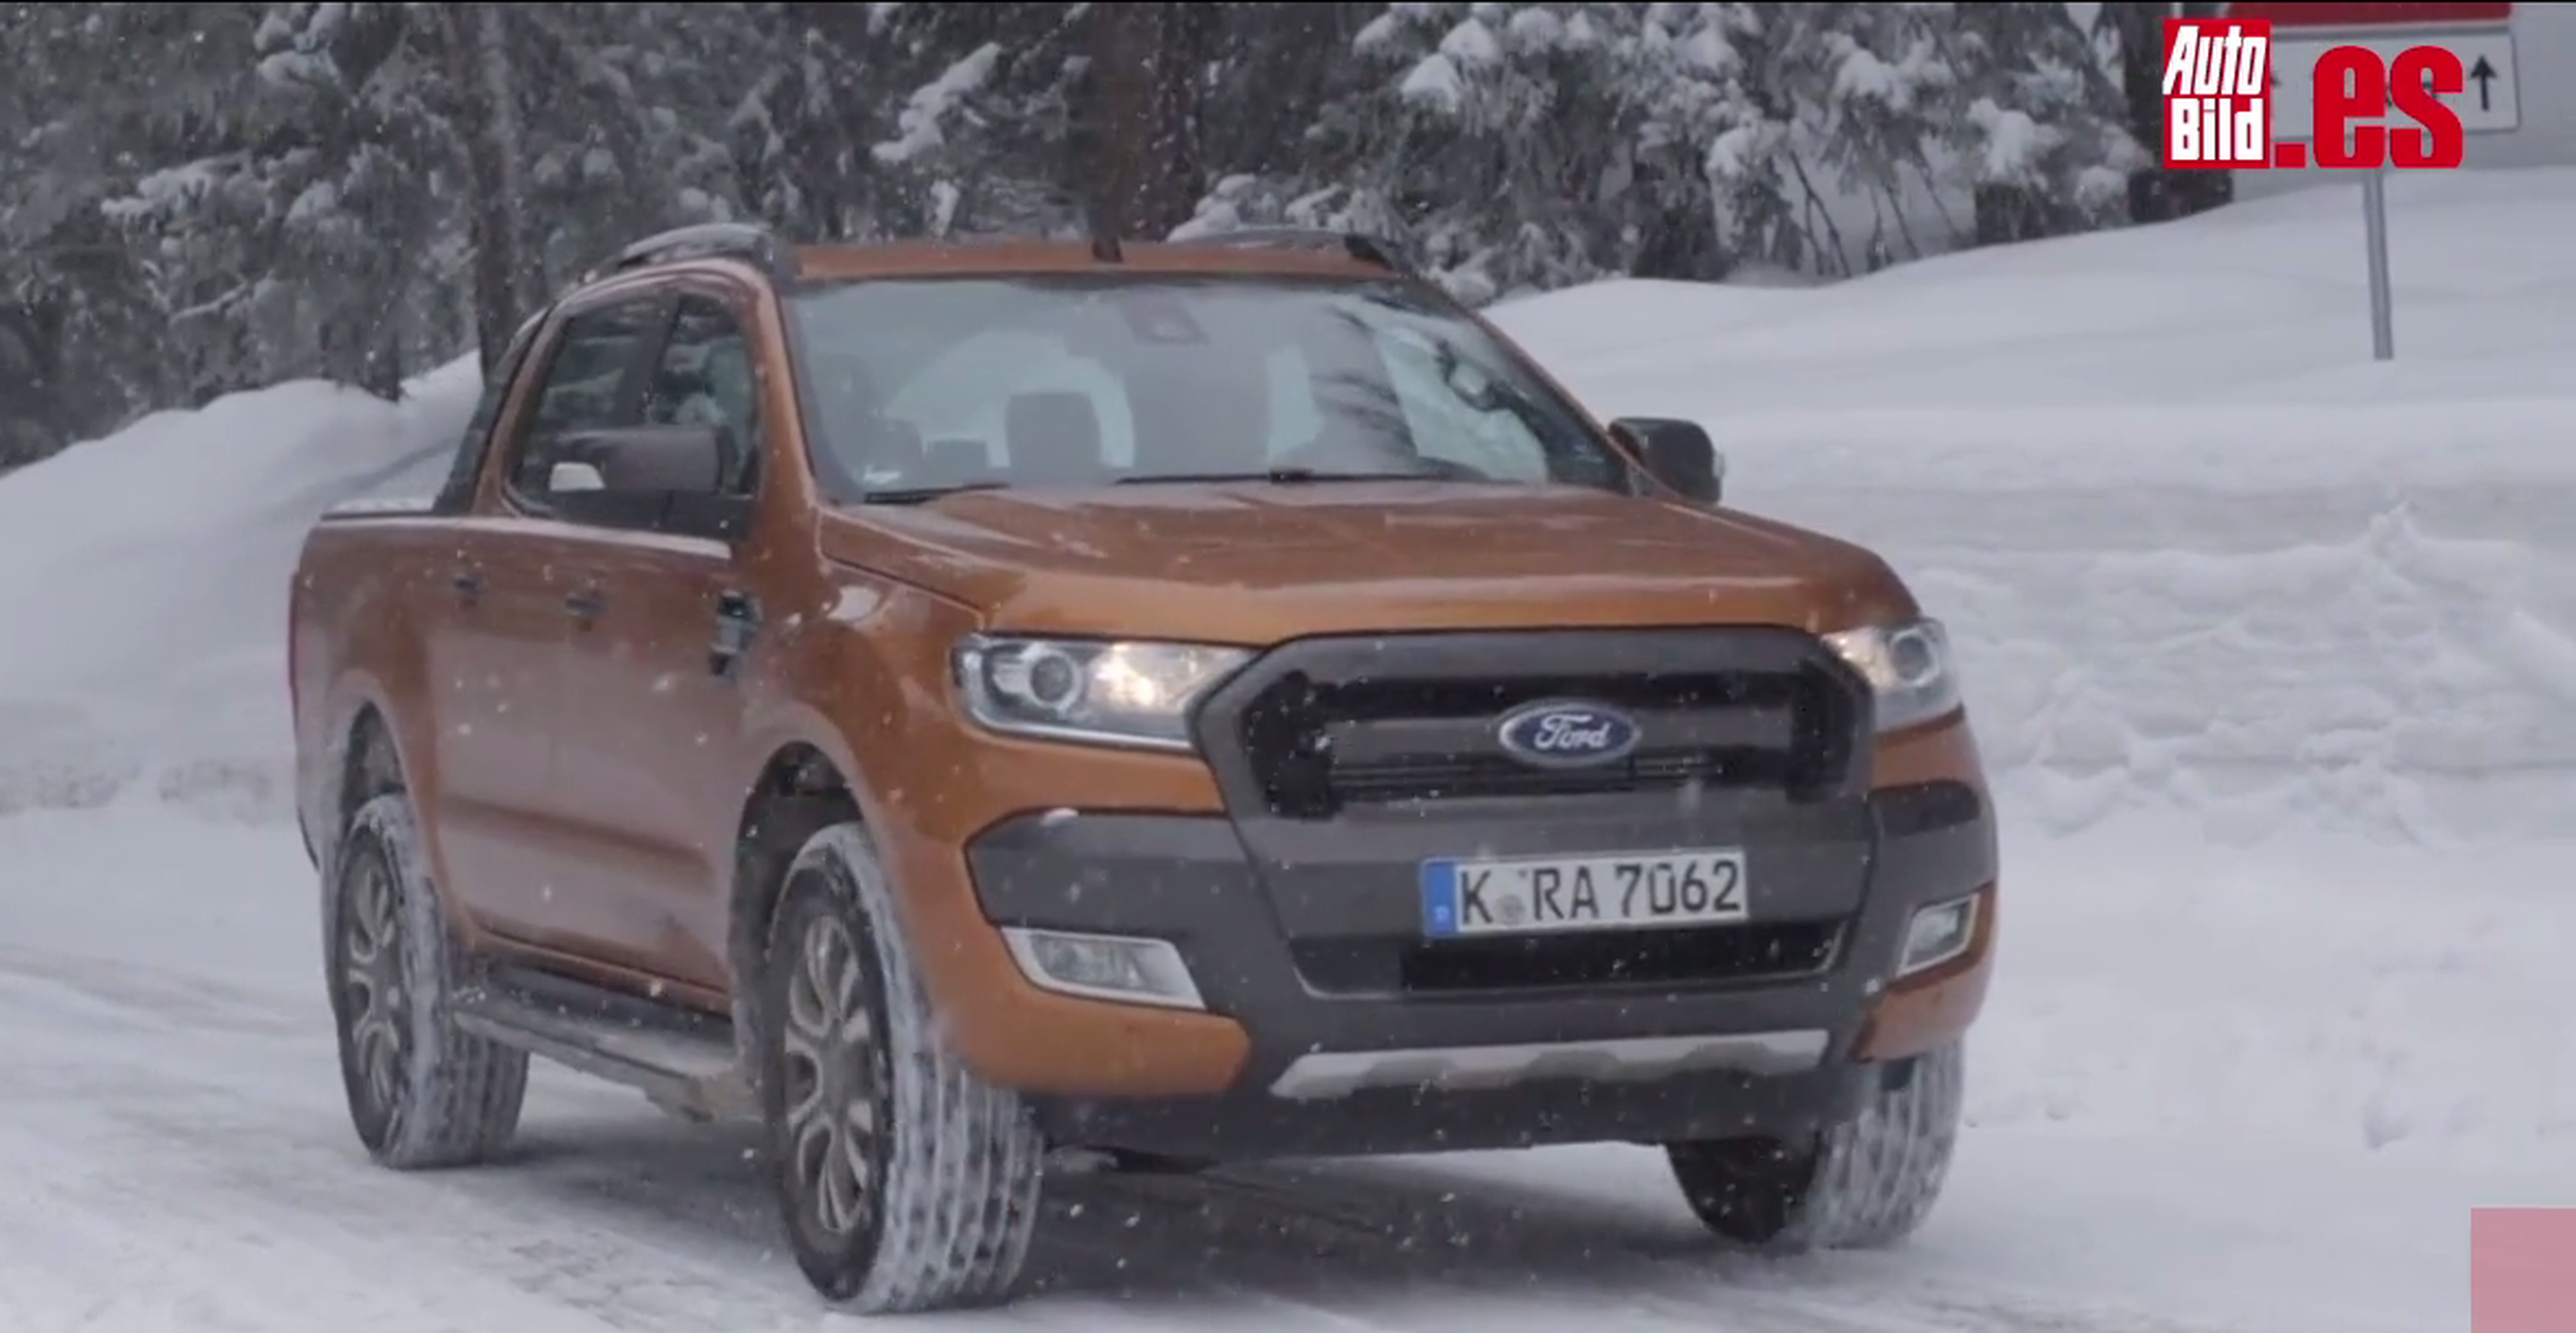 Ford Ranger Wildtrak sobre nieve, grava y ¡lo que venga!